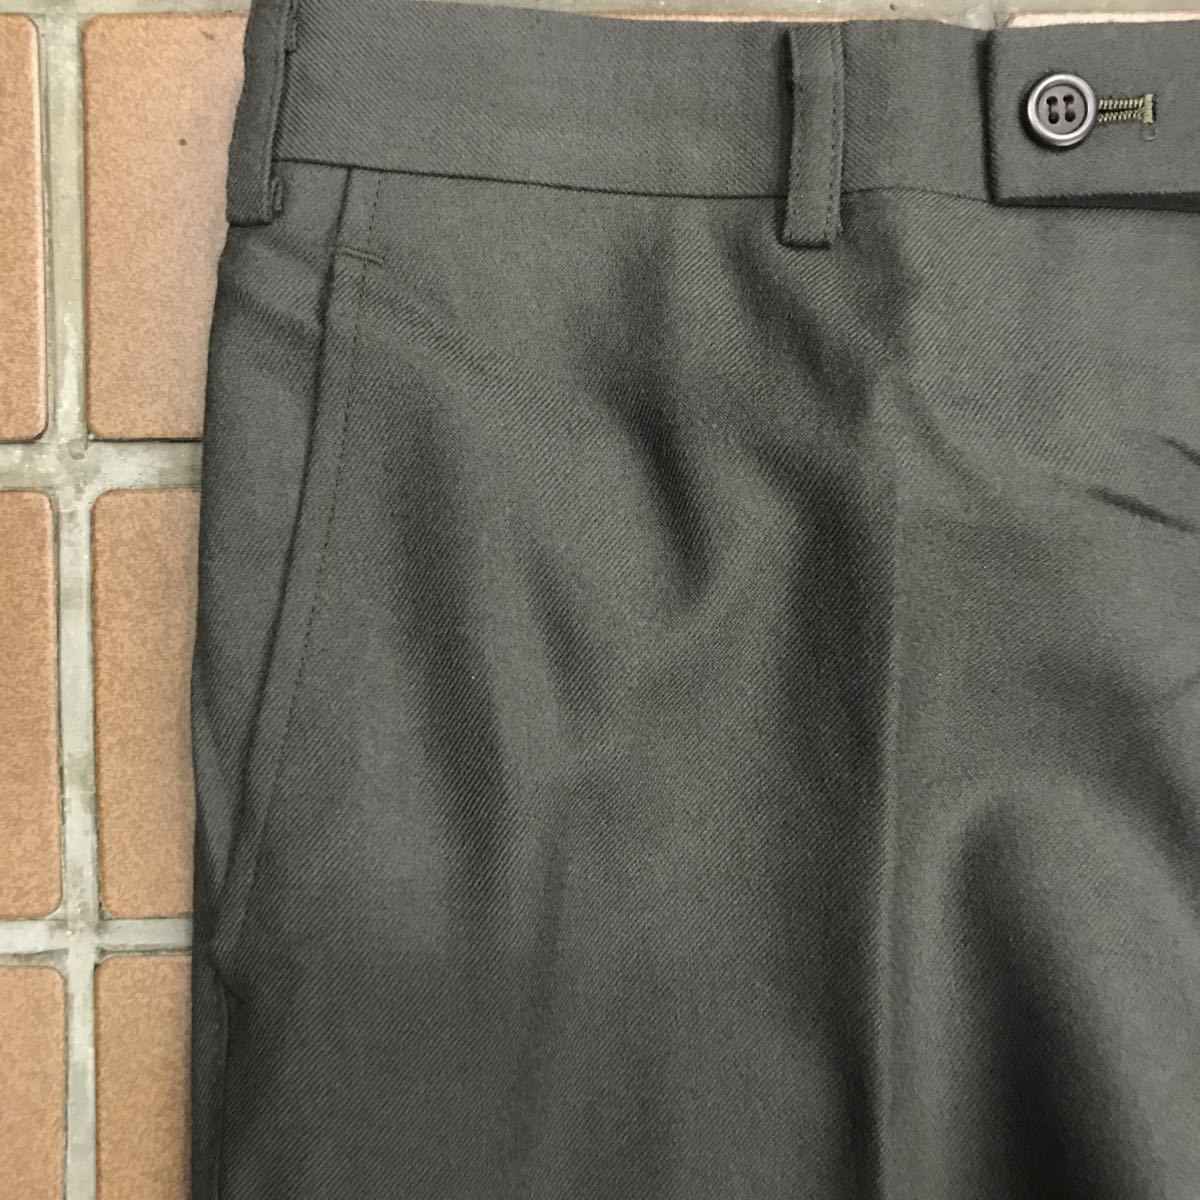 [ новый товар ]Pierre Cardin/ не использовался супер-скидка / мужской слаксы Golf брюки / талия 88/ зеленый серия spinachi зеленый / сделано в Японии * шерсть 100%no- tuck 